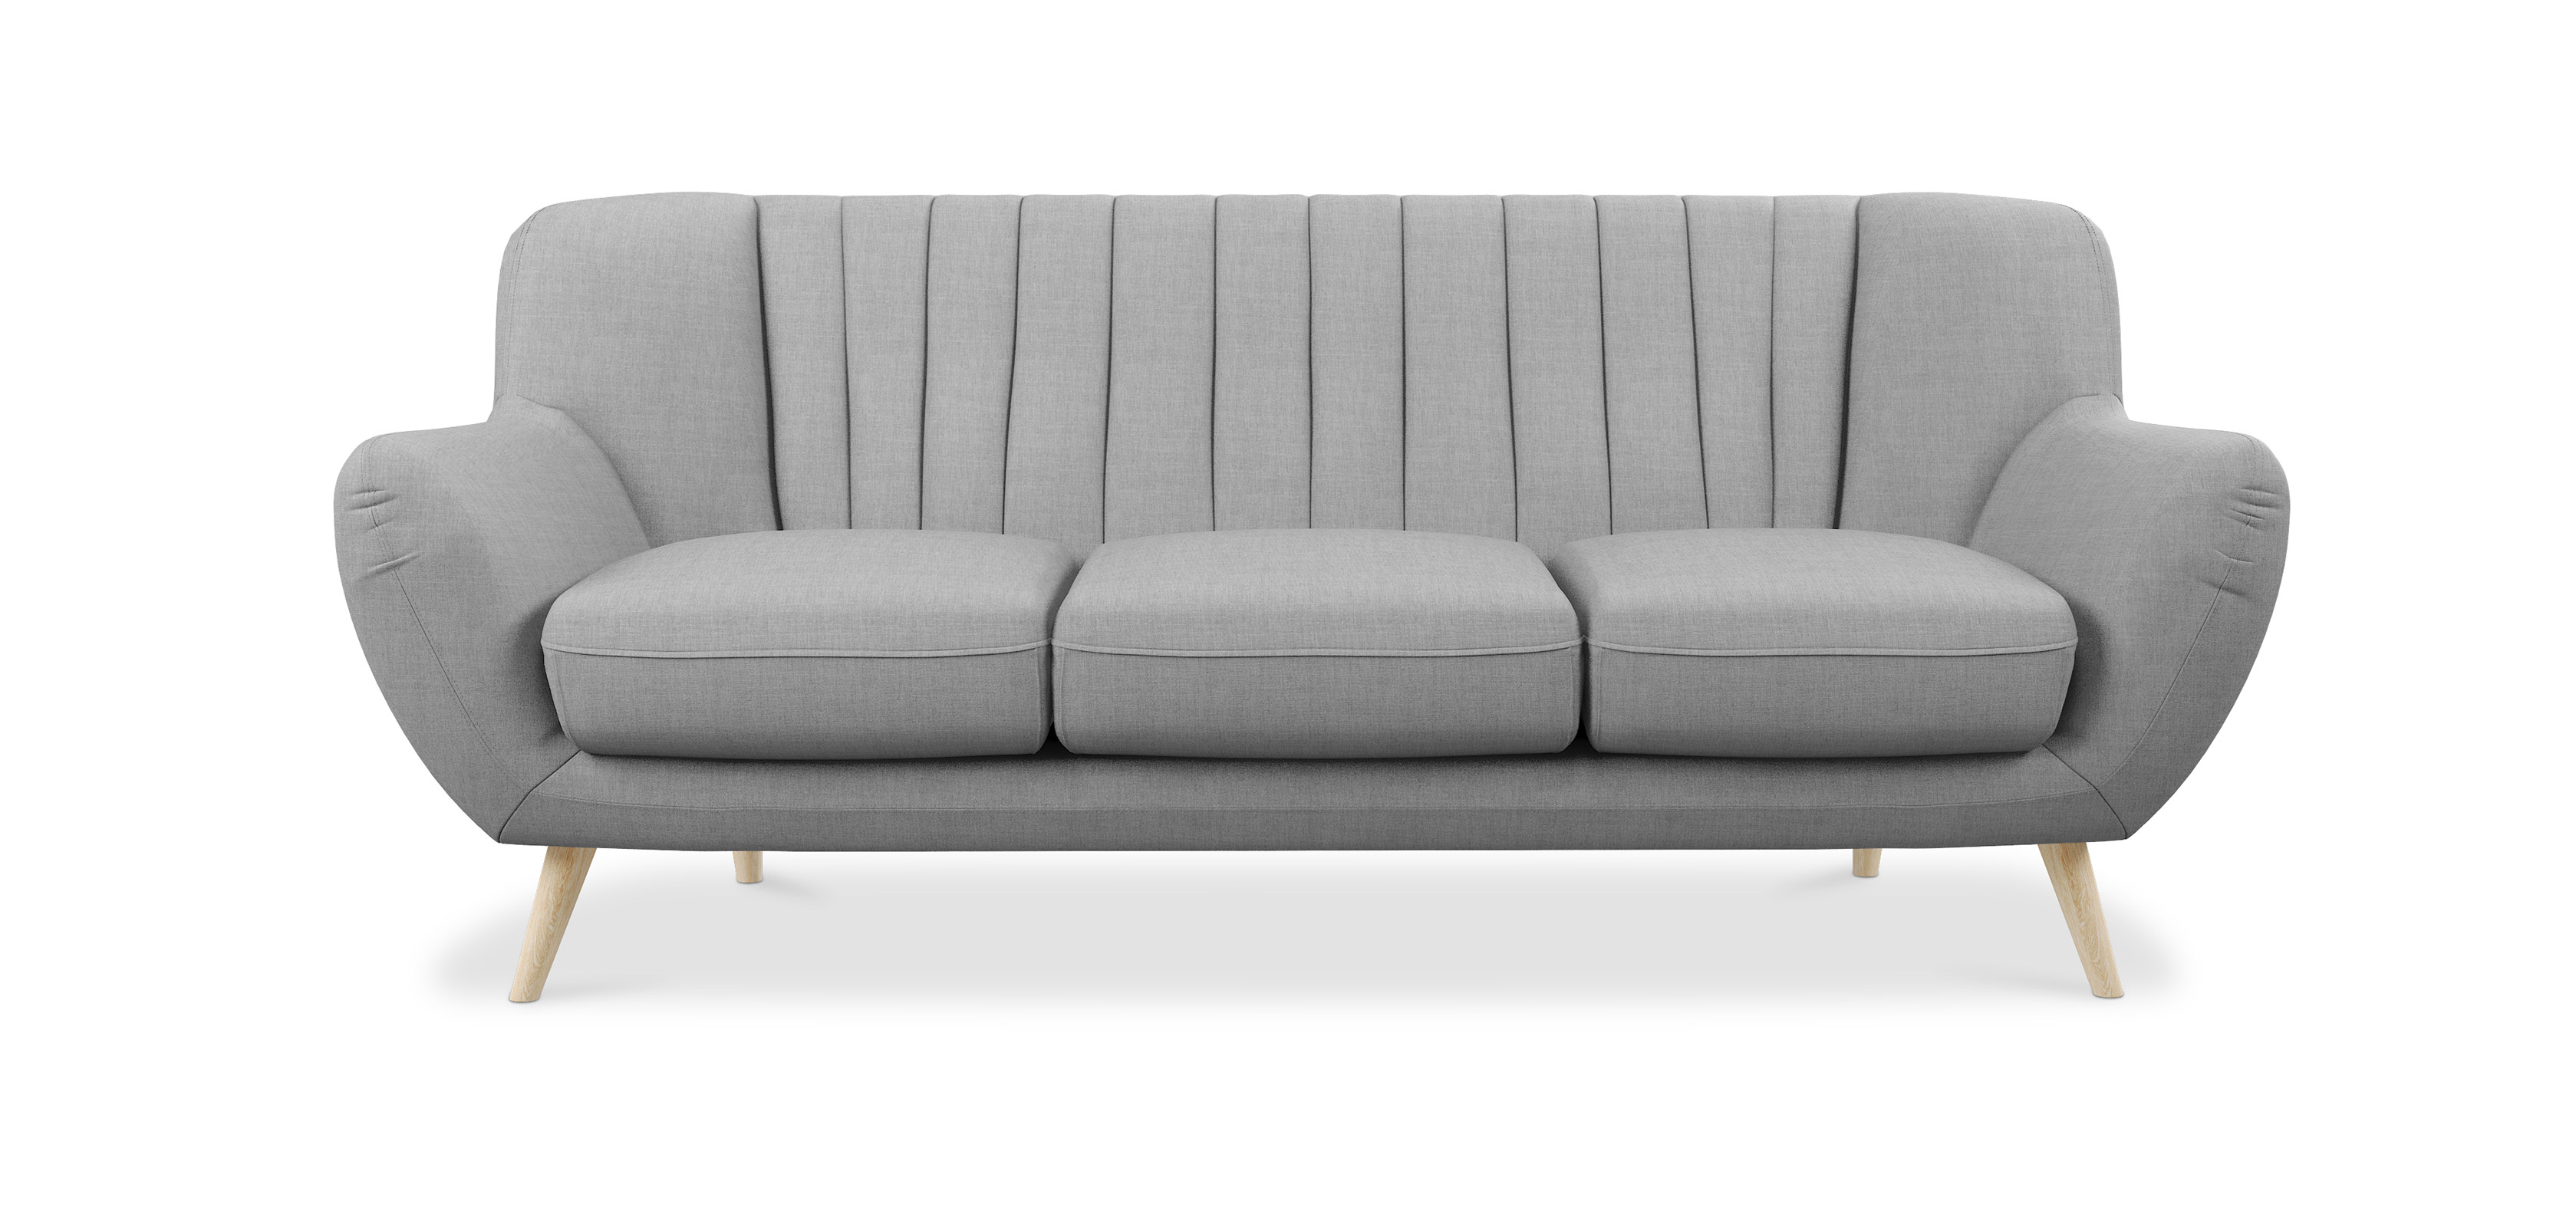 scandinavian sofa beds uk